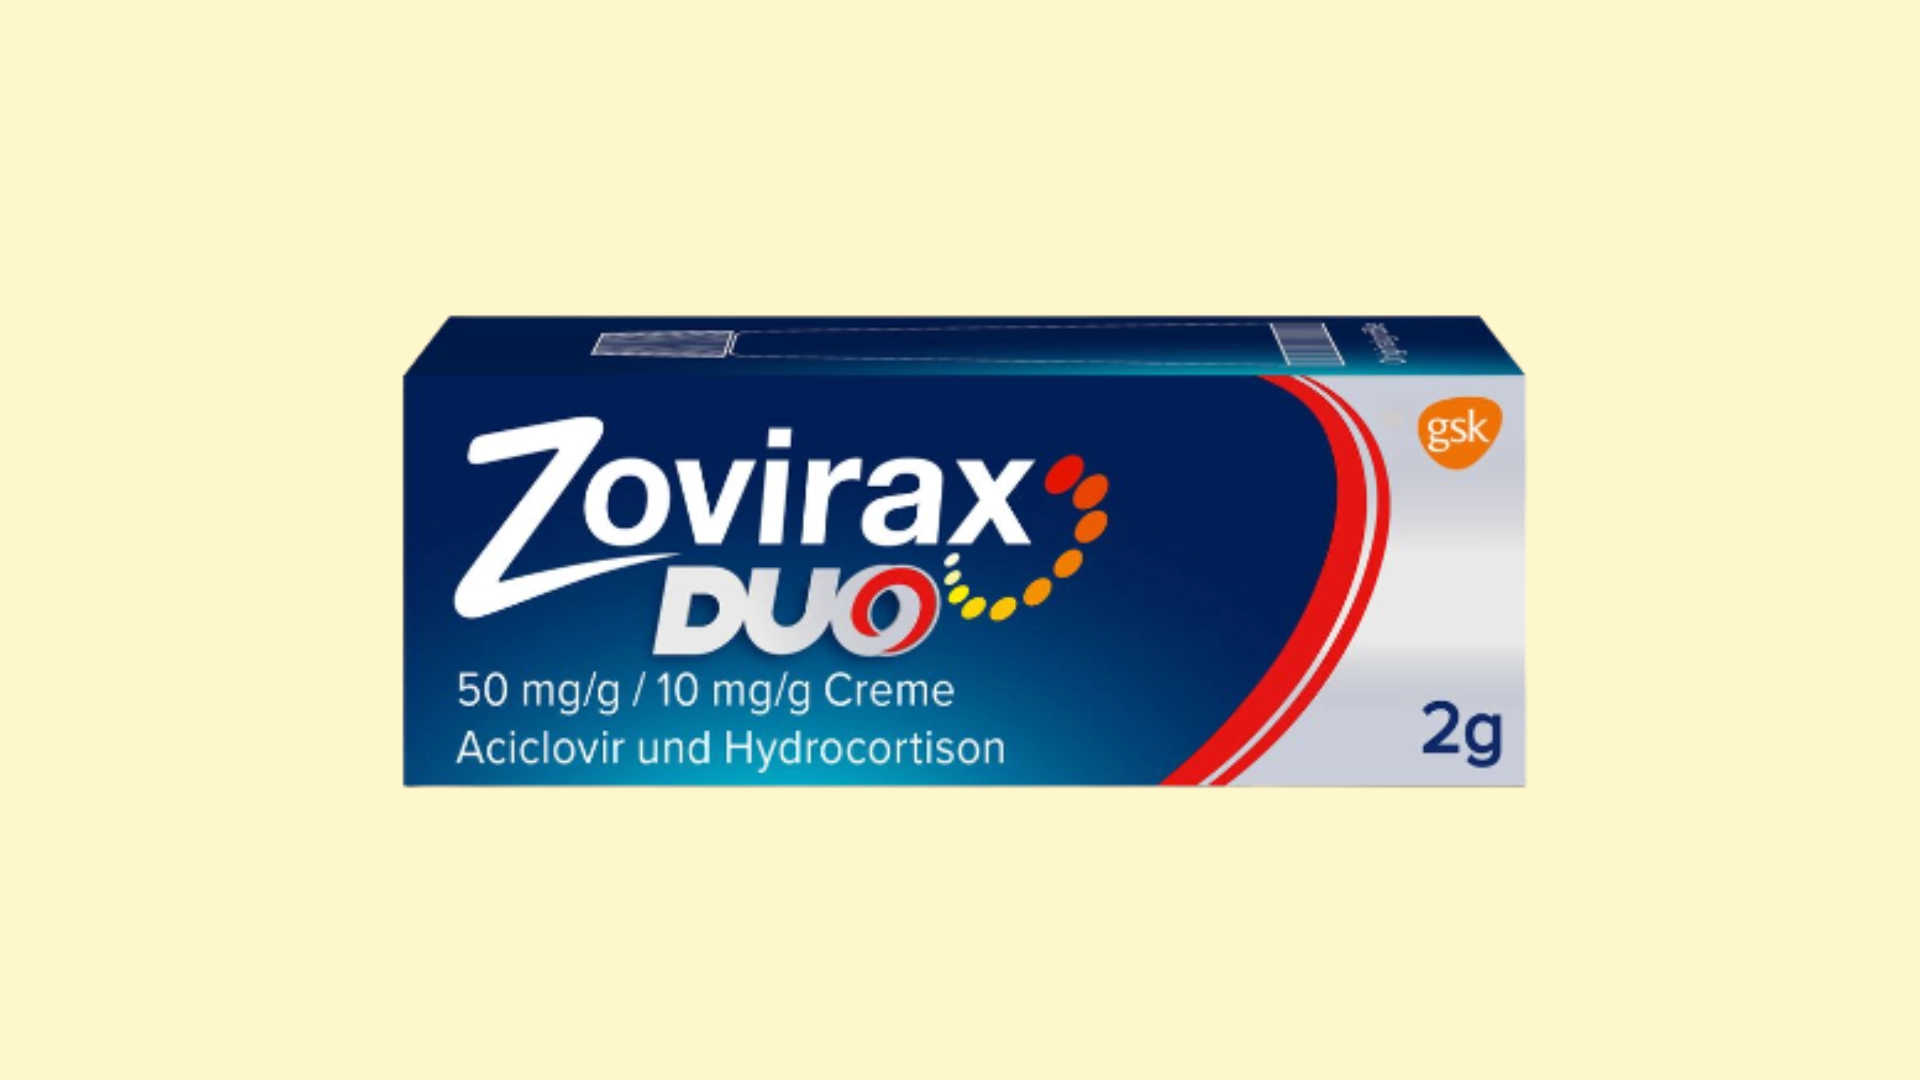 Zovirax Duo E recepta   recepta online z konsultacją | cena  dawkowanie  przeciwwskazania